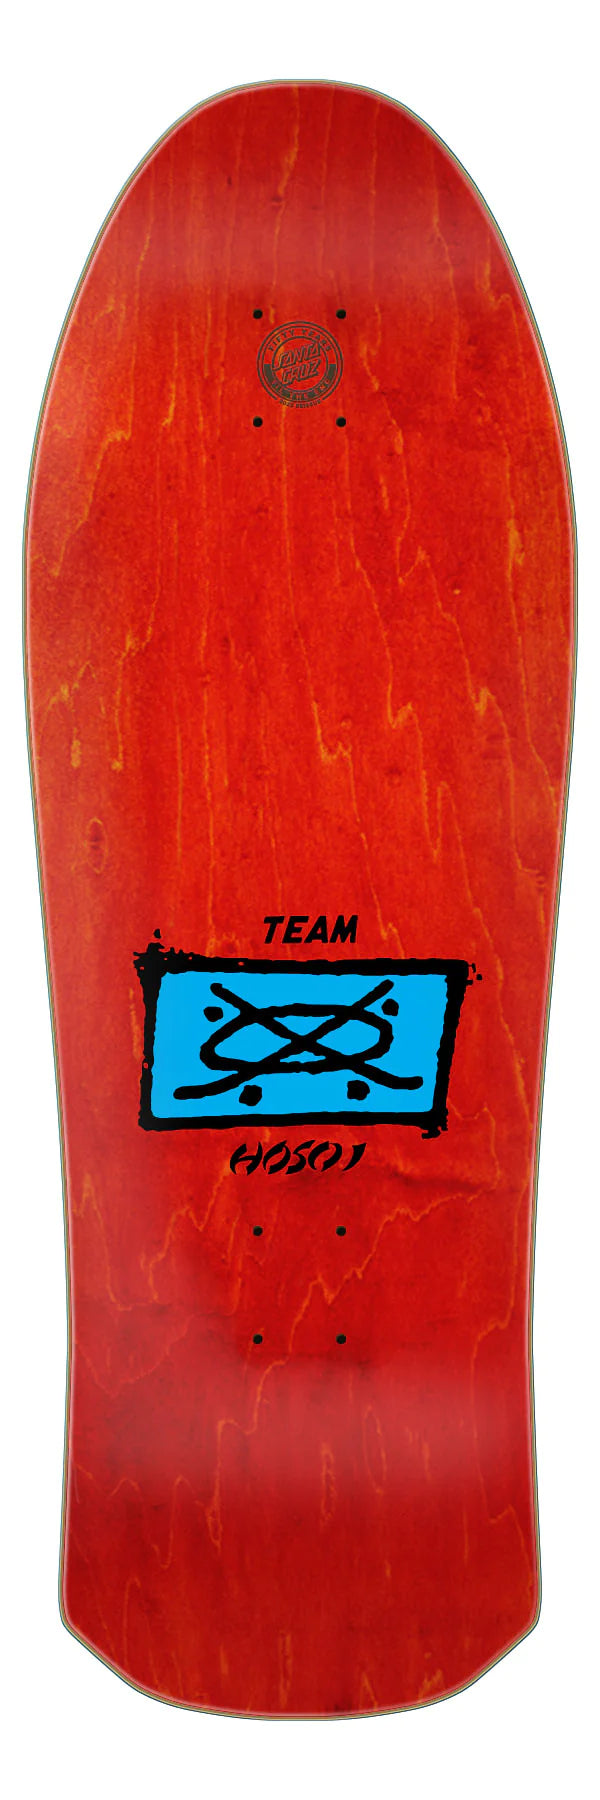 Santa Cruz Hosoi Irie Eye Reissue 9.95 Skateboard Deck